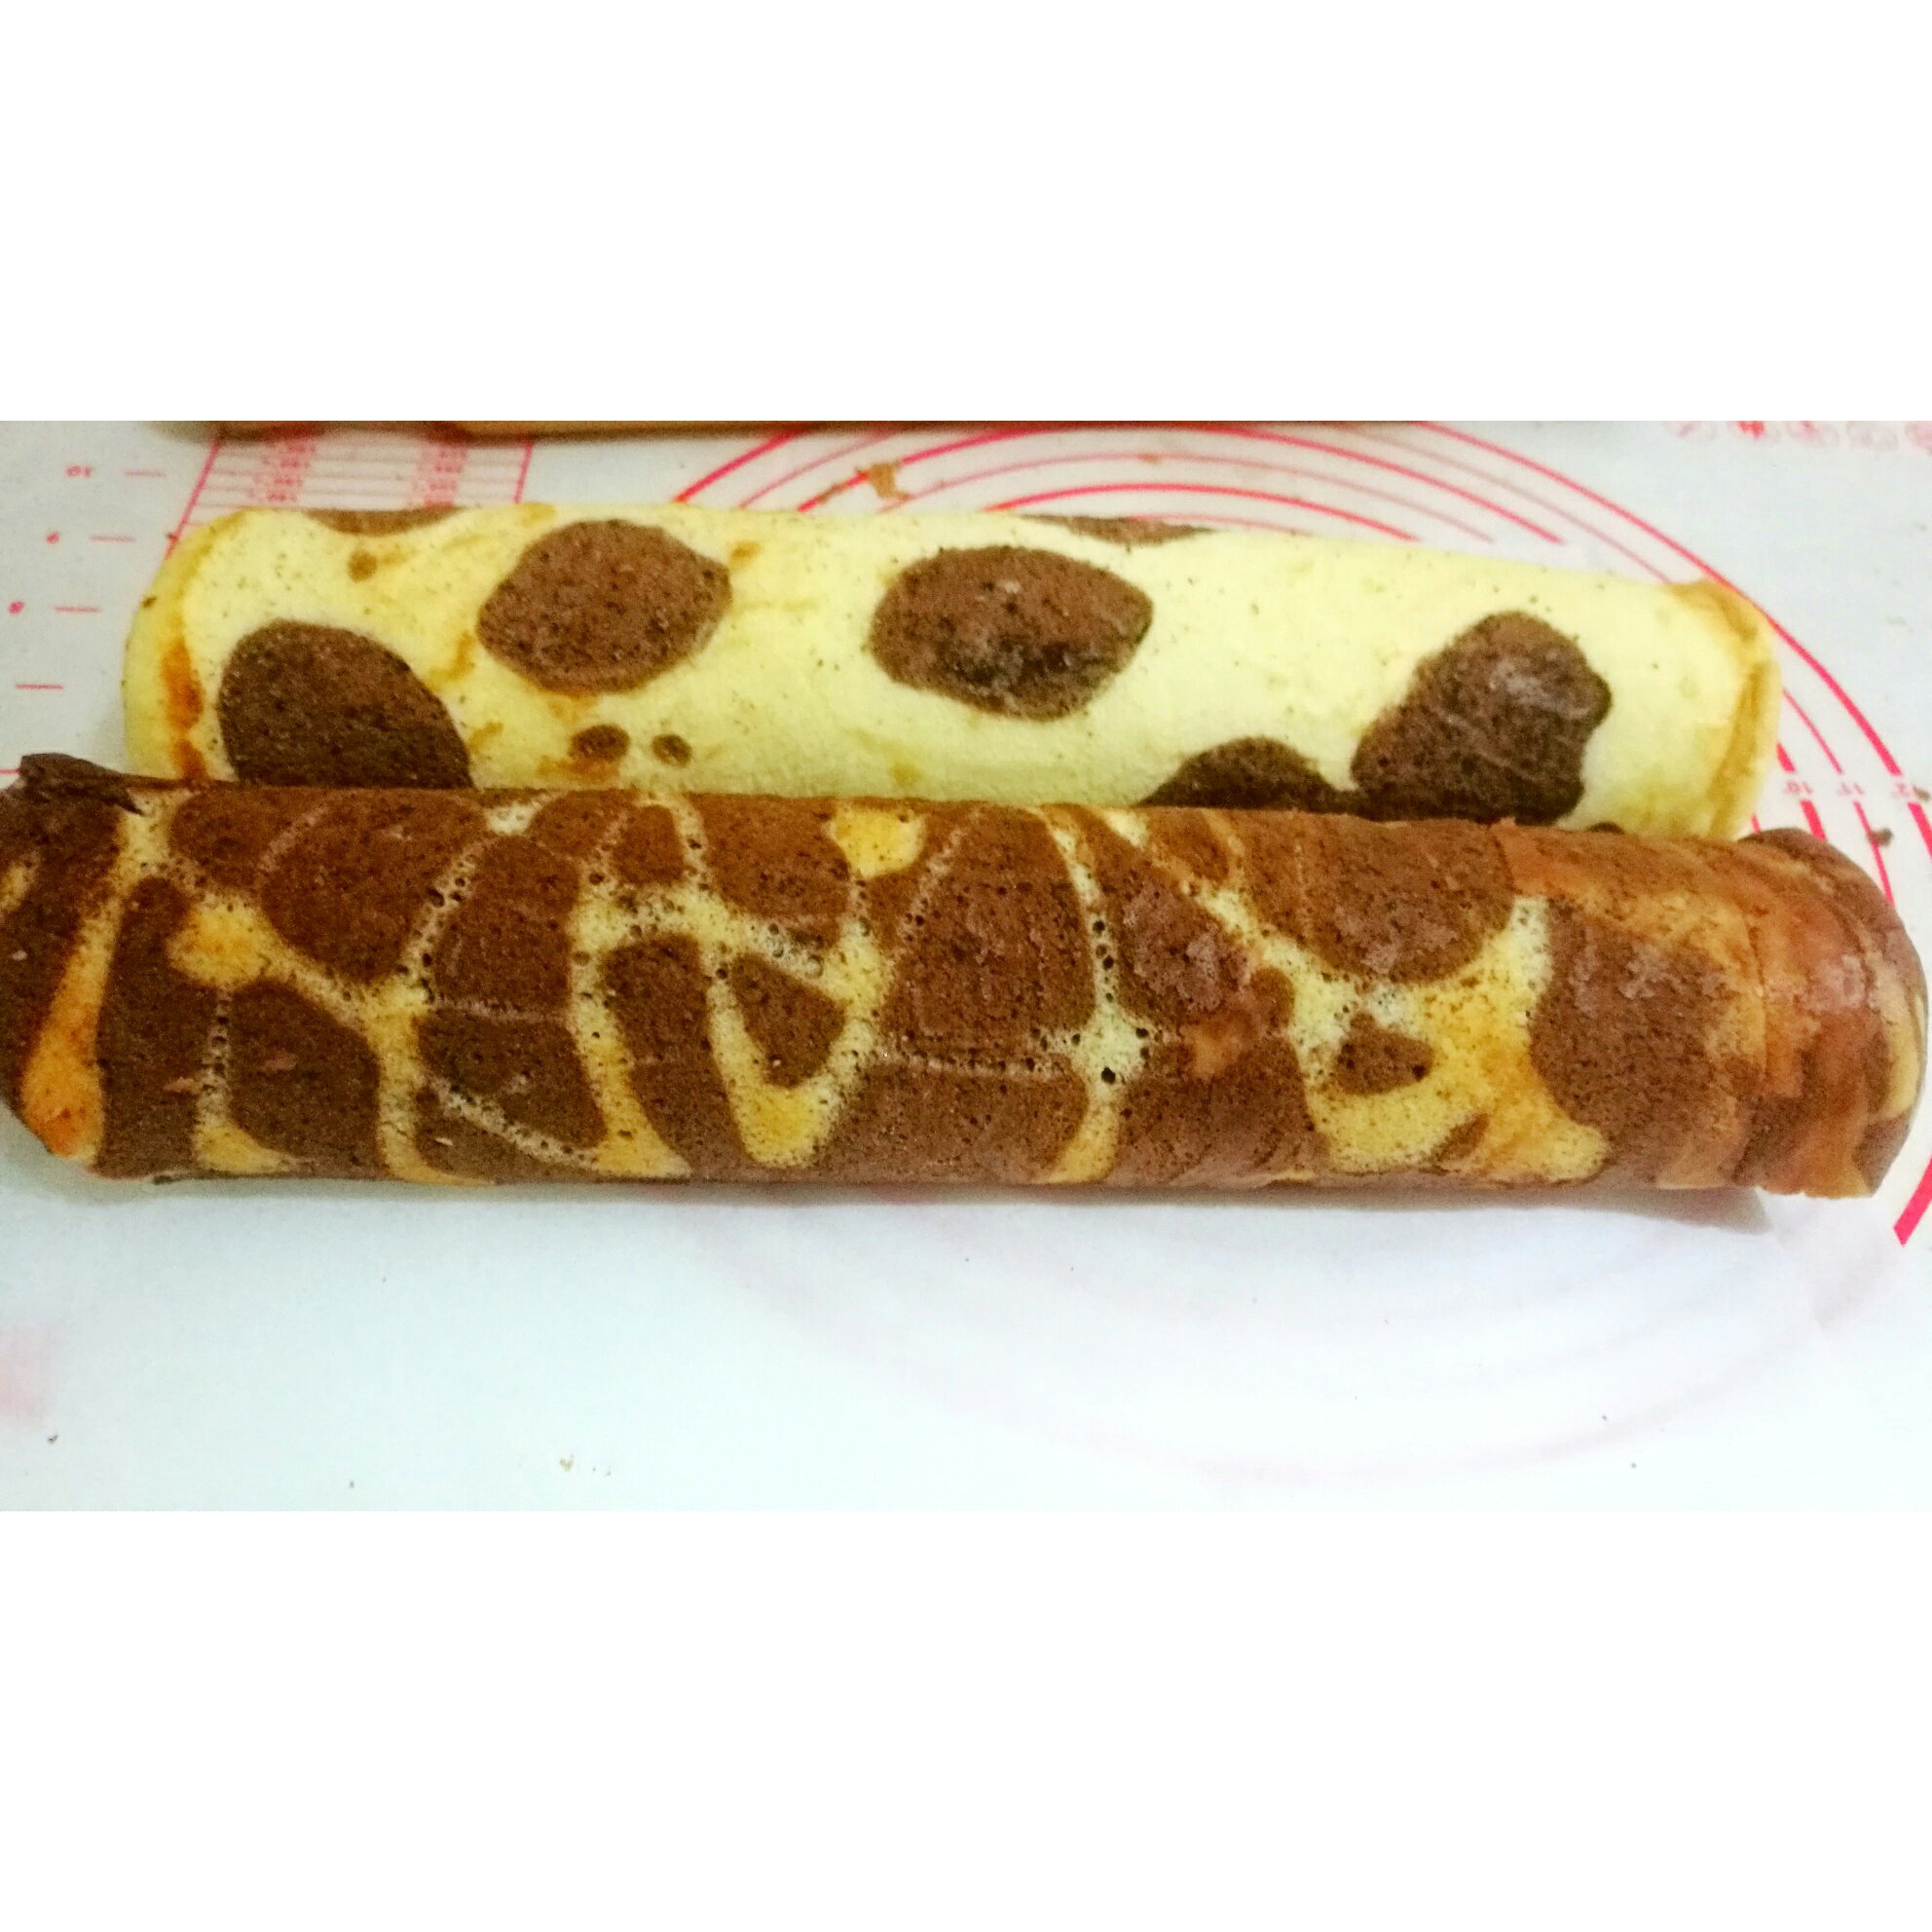 奶牛蛋糕卷+长颈鹿蛋糕卷